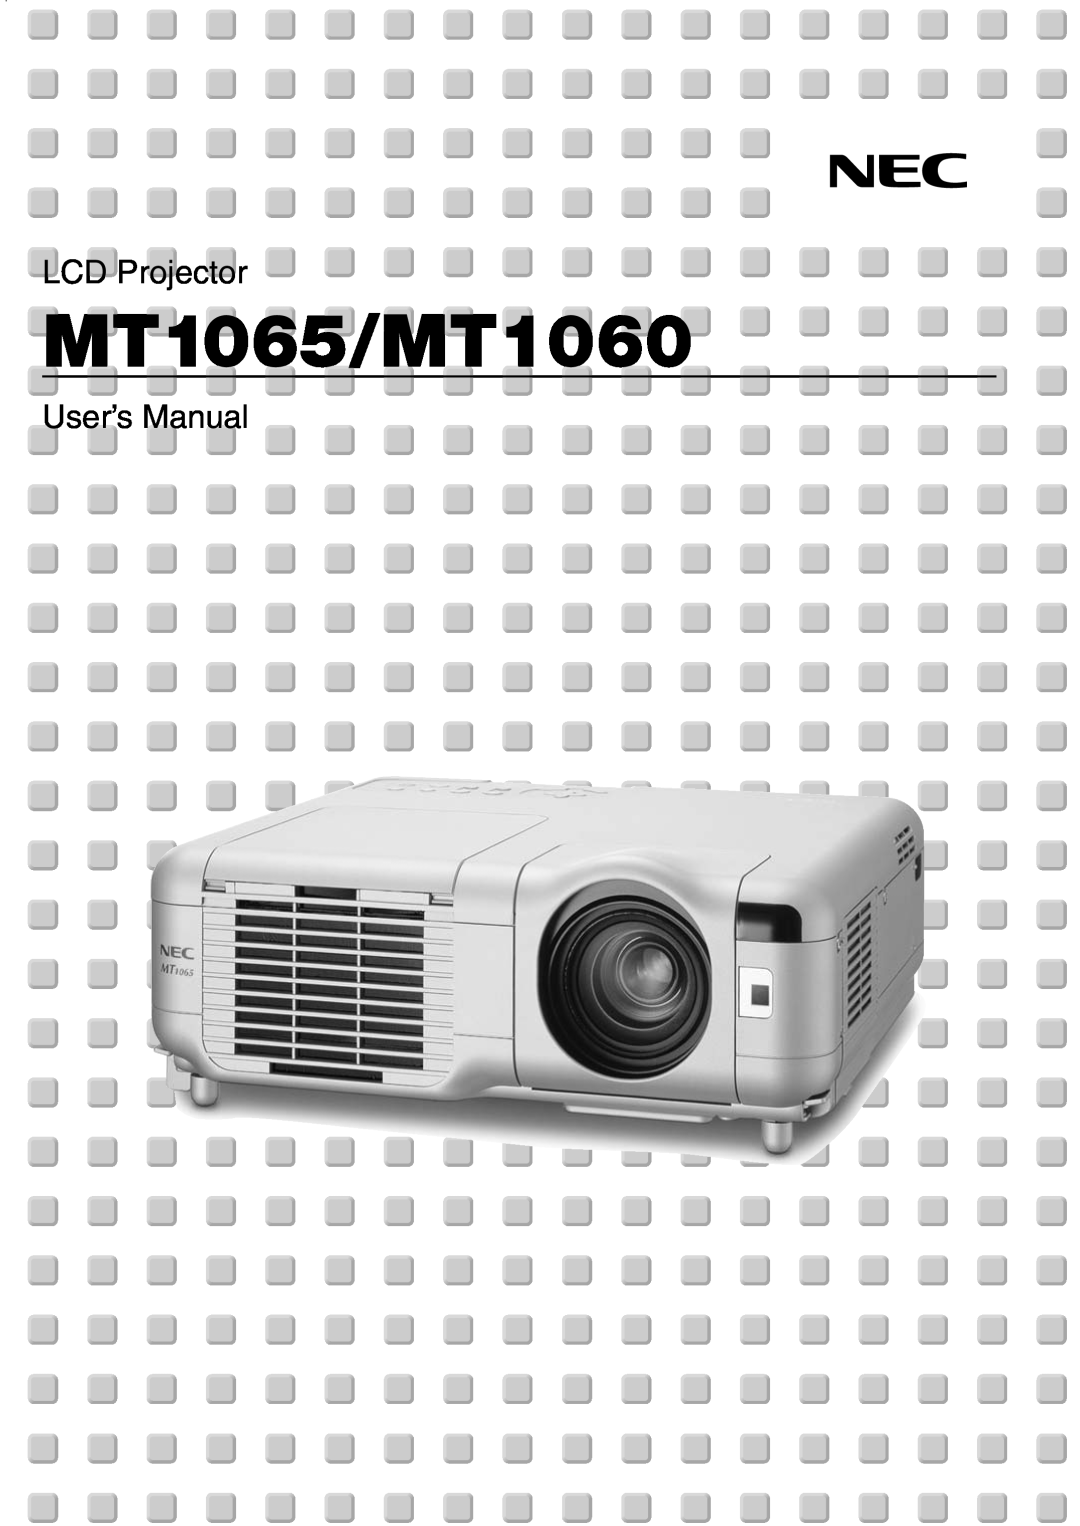 NEC user manual MT1065/MT1060, LCD Projector, User’s Manual 